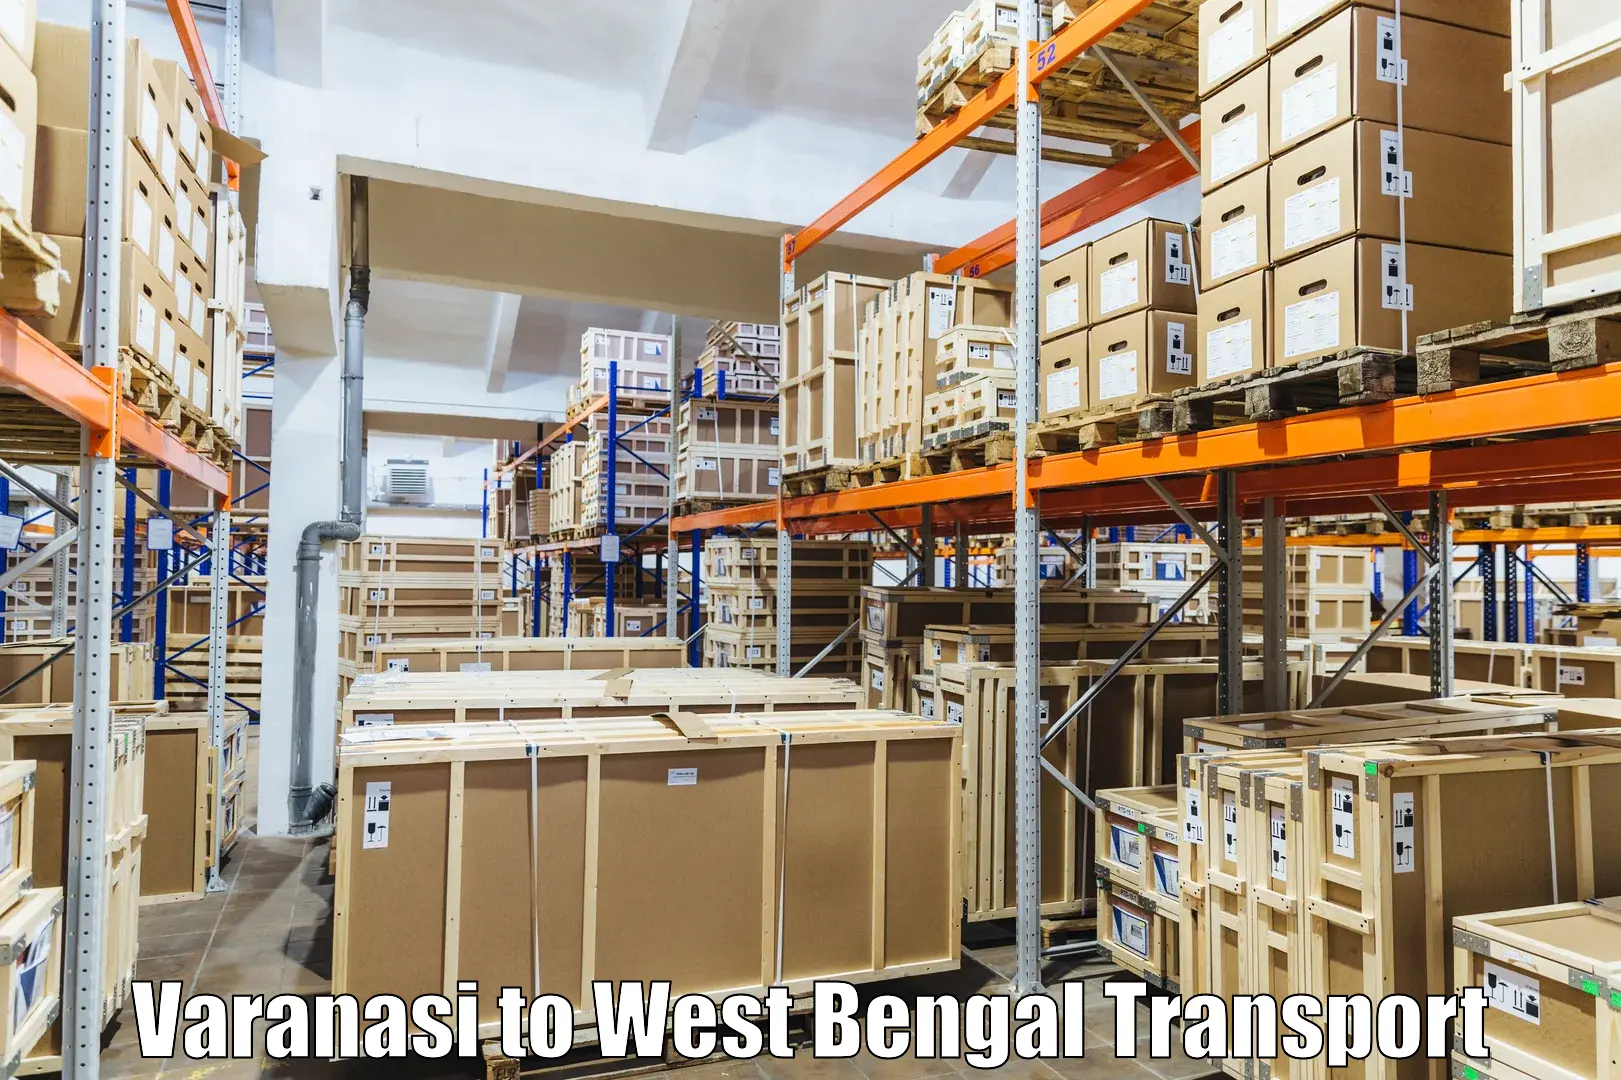 Commercial transport service Varanasi to Bagdogra